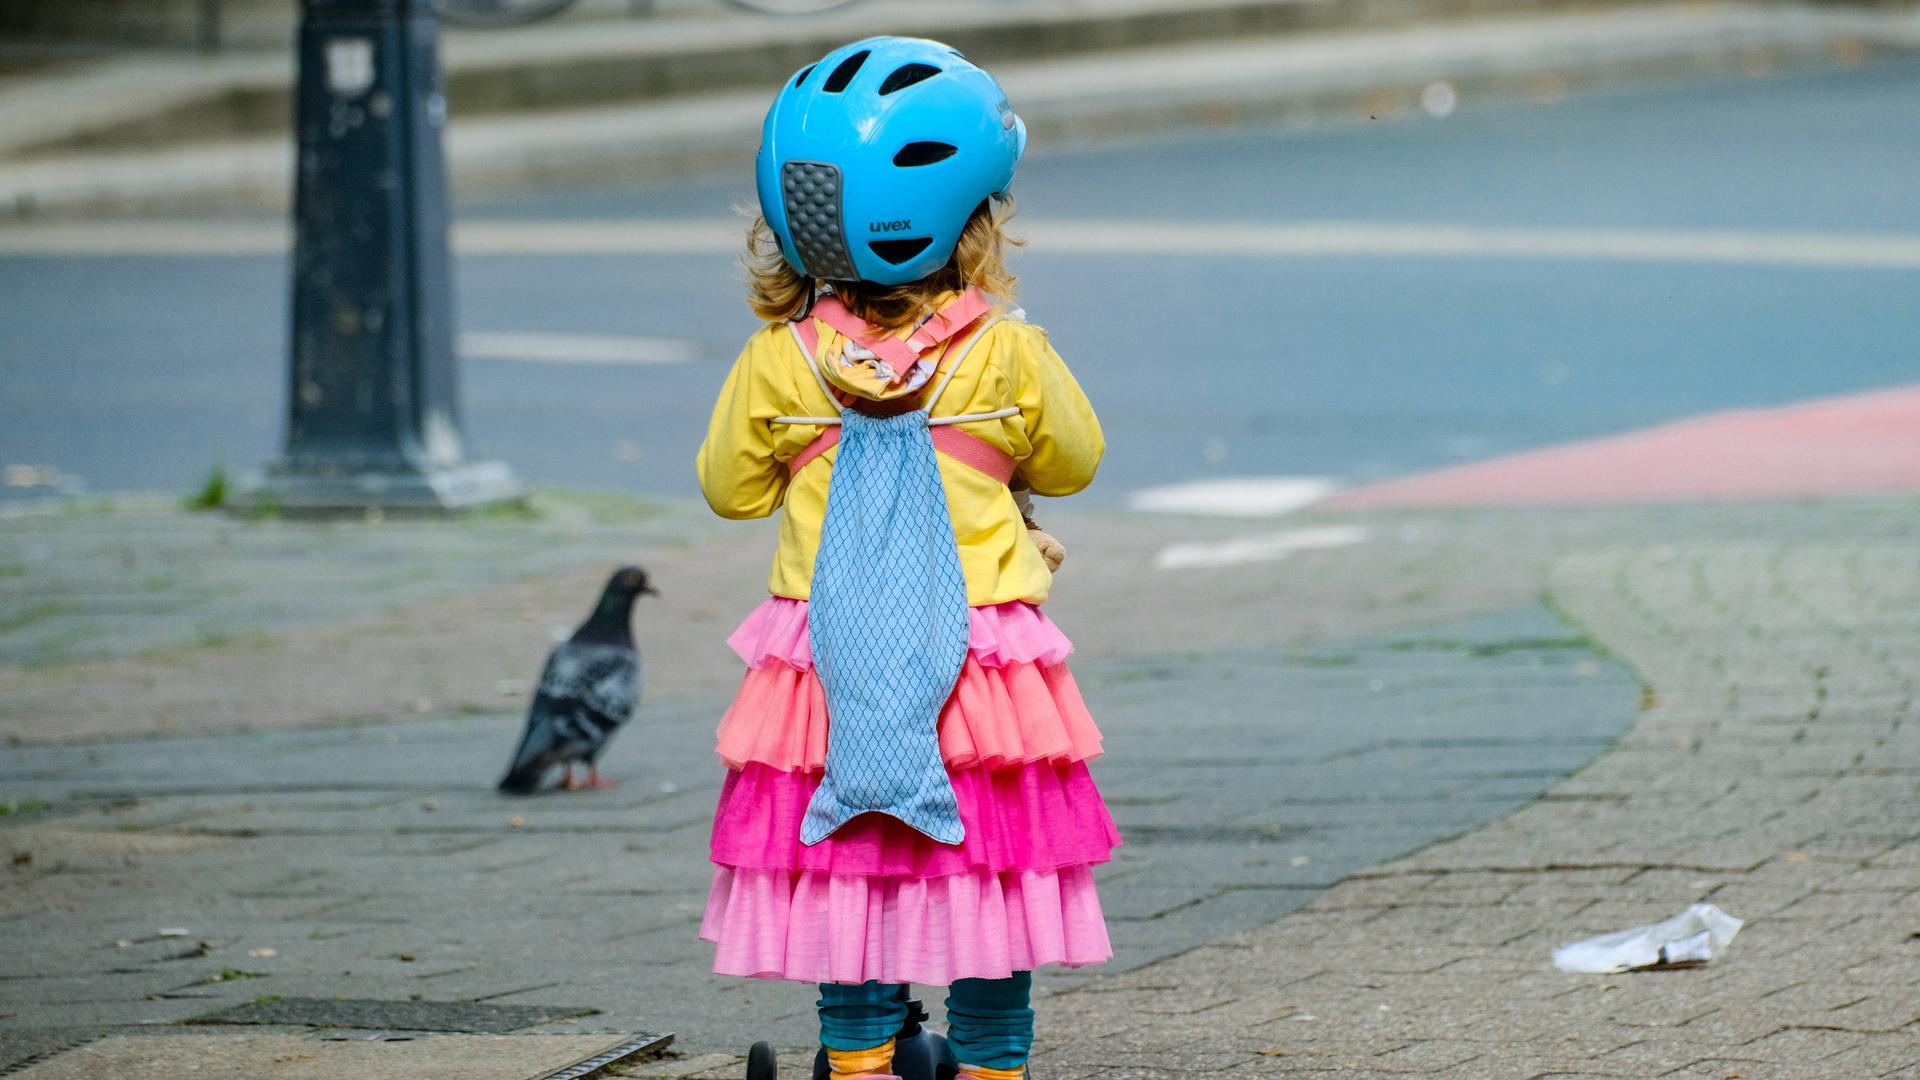 Ein kleines Kind mit einem Tretroller, einer gelben Jacke und einem pinken Rock. Auf dem Kopf hat das Kind einen blauen Helm. Auf dem Rücken einen Rucksack in Form eines blauen Fisches.